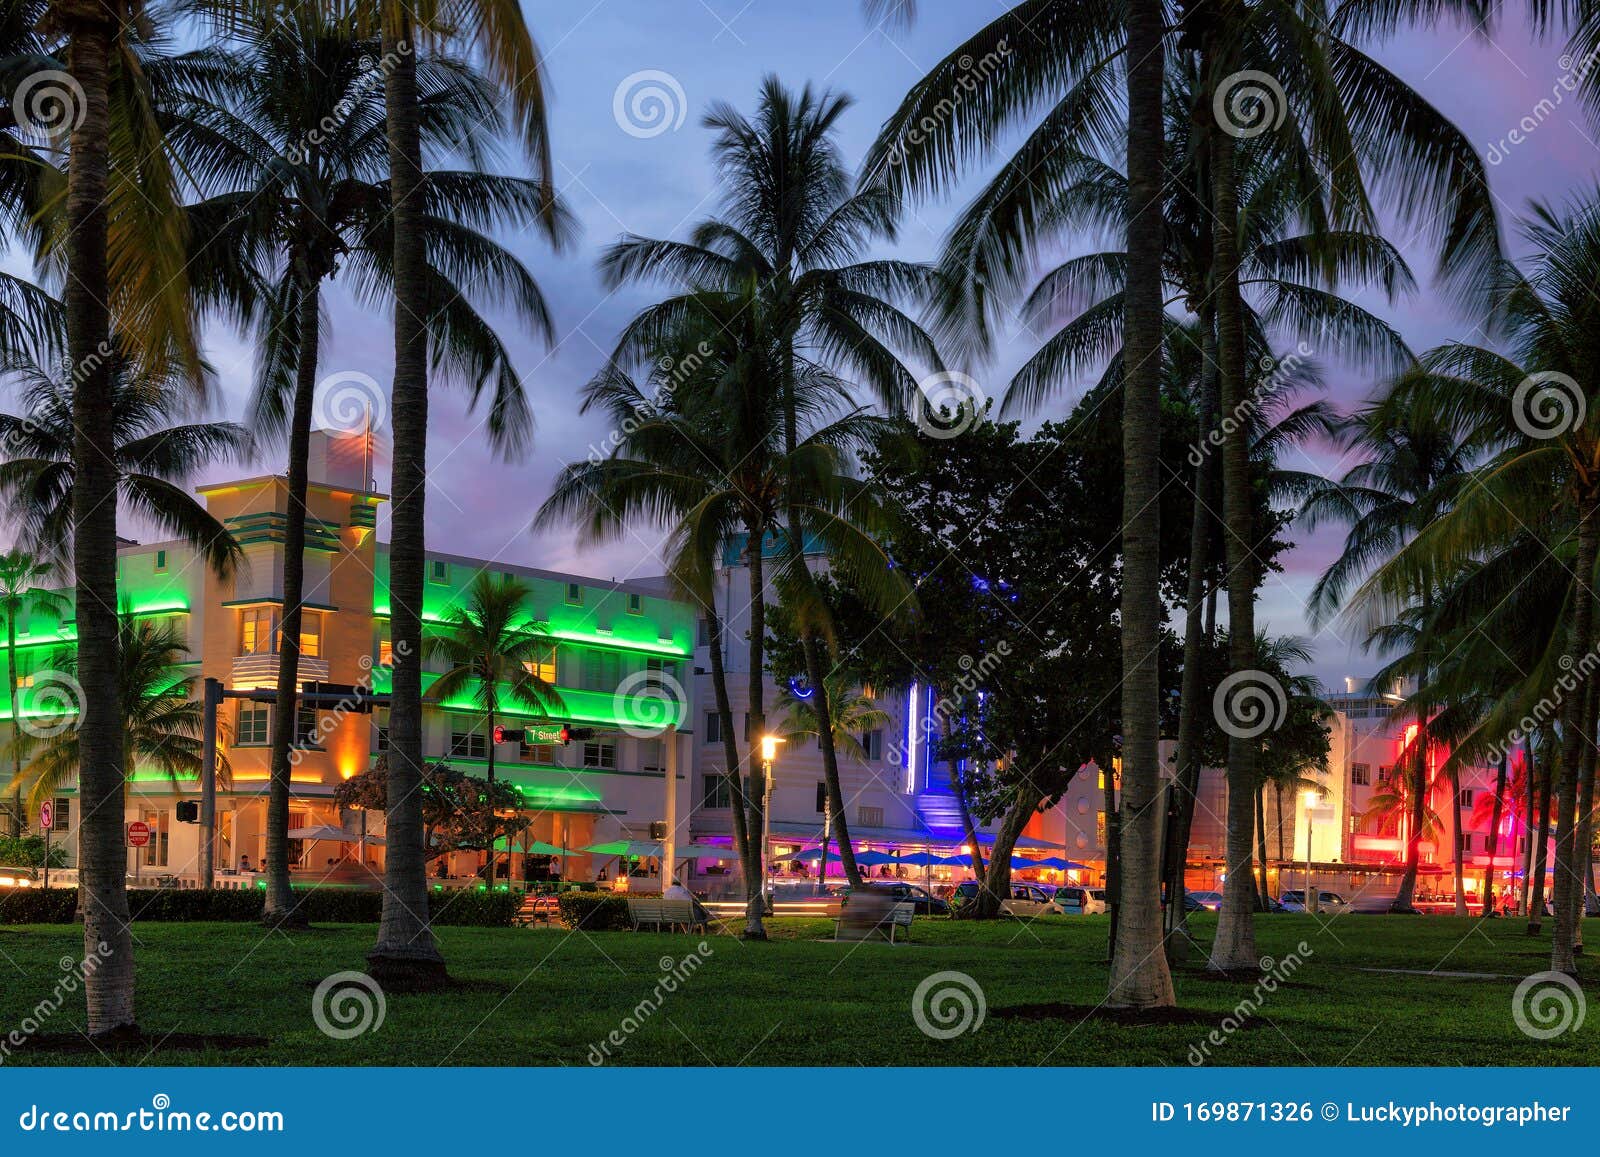 Nachtblick auf Ocean Drive in Miami Beach, Florida. Night view Ocean Drive in Miami Beach, Florida - Hotels und Restaurants bei Sonnenuntergang am Ocean Drive, weltberühmtes Ziel